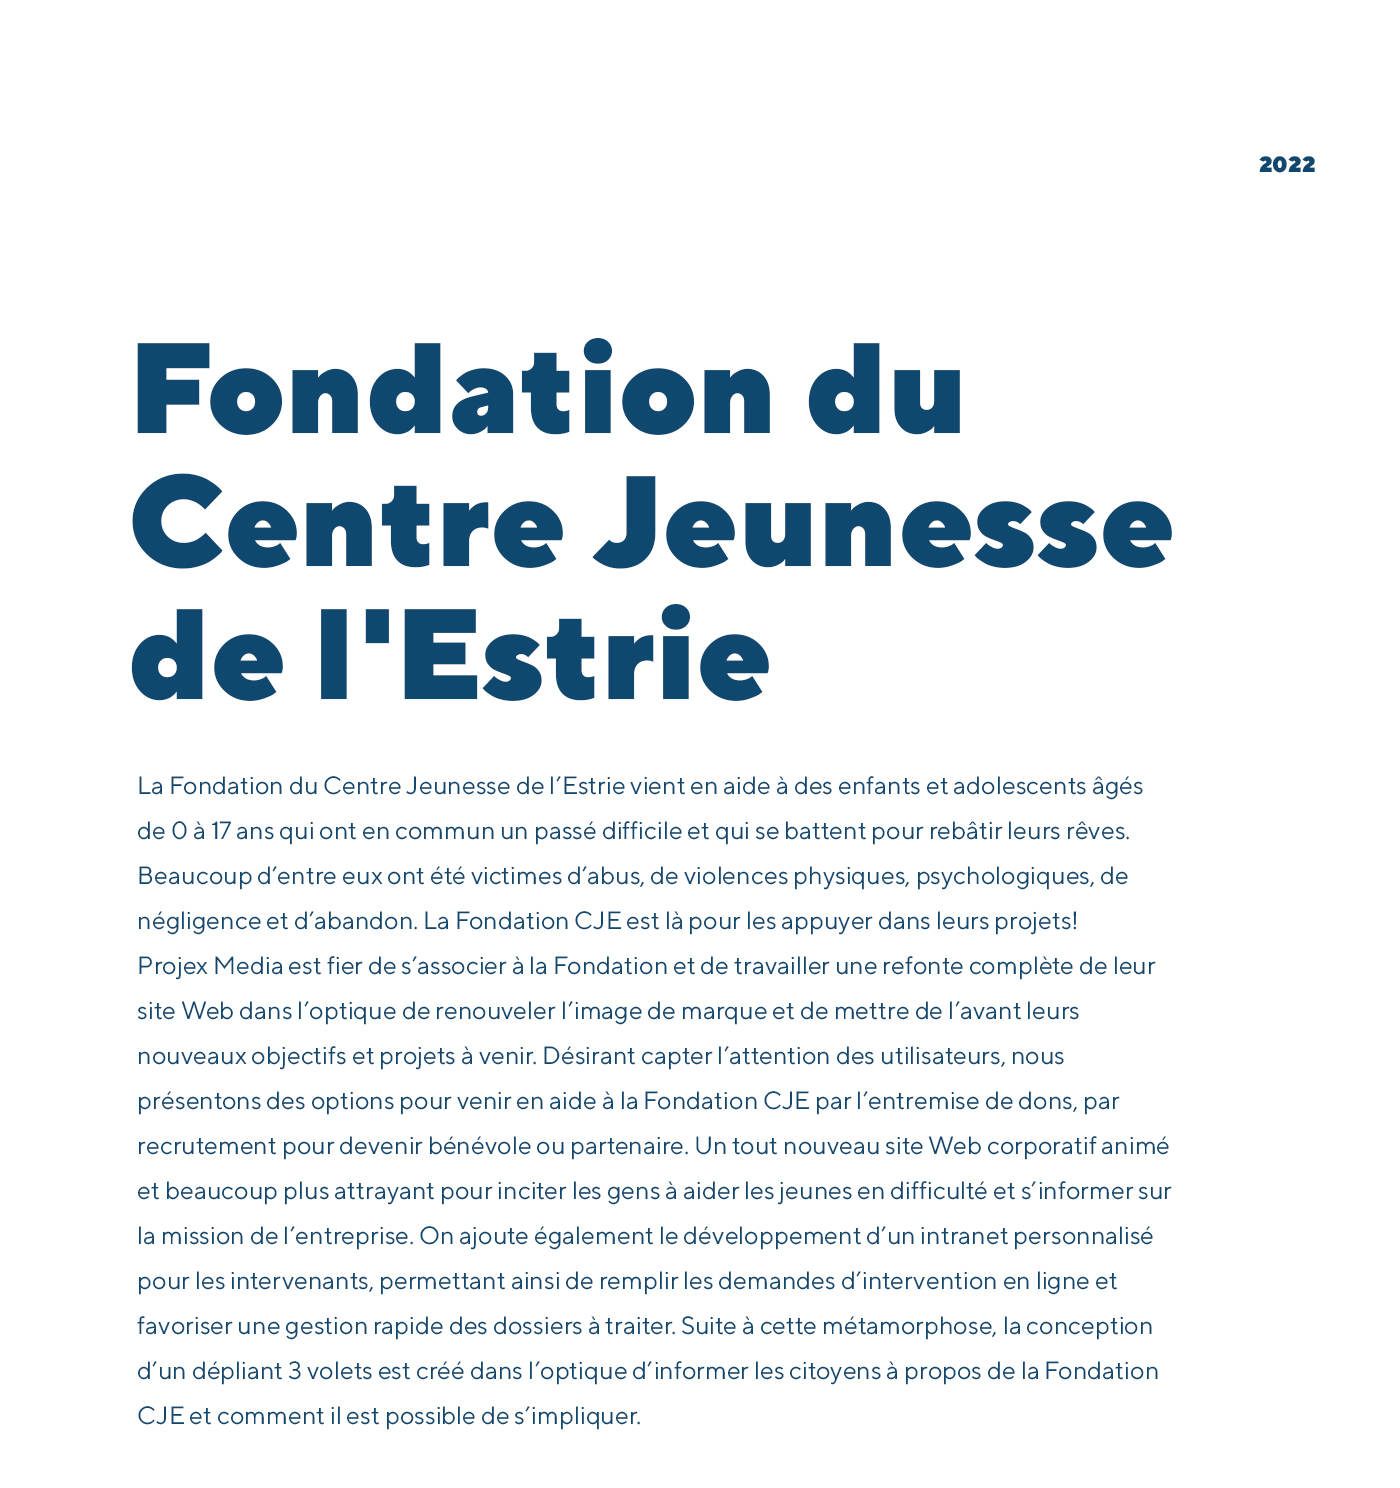 Fondation du Centre jeunesse de l'Estrie / 2022 - Réalisation signée Projex Media